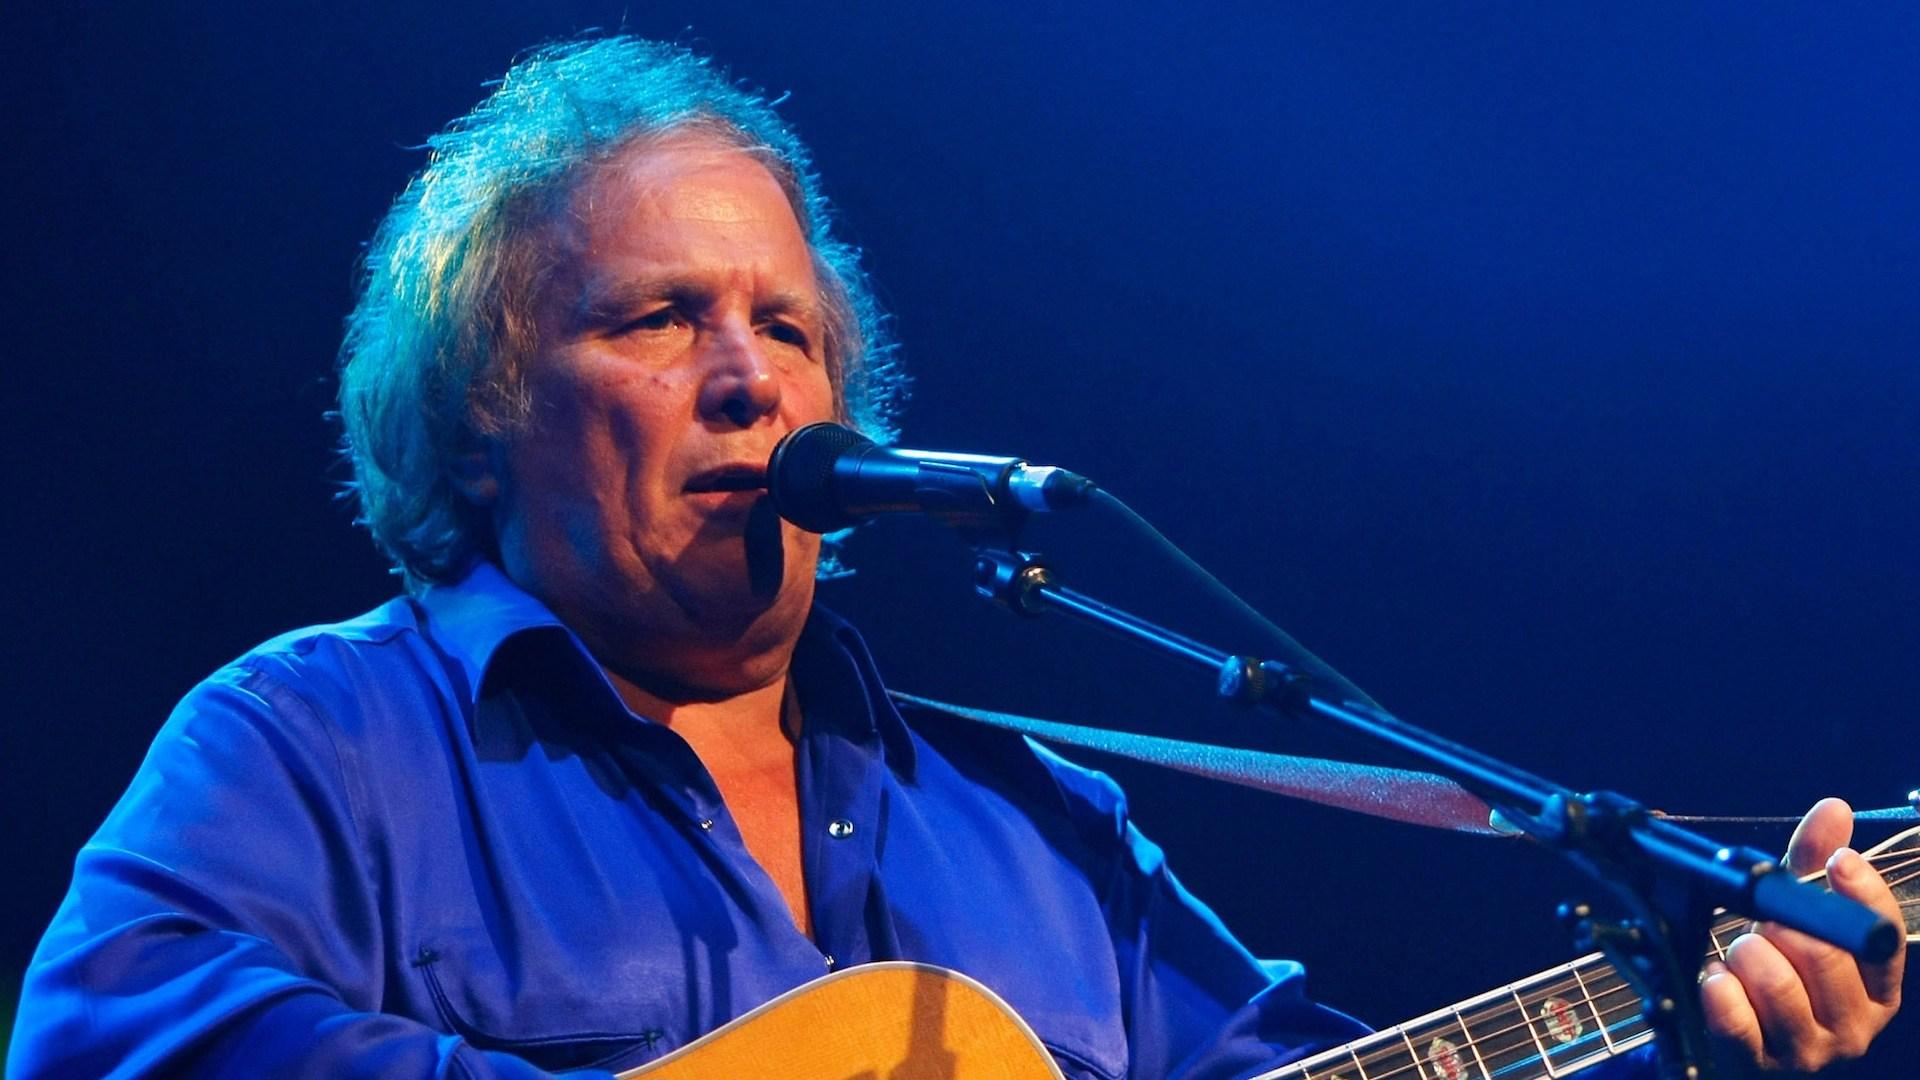 American Pie” Singer Don McLean, Has a New Album, Tour